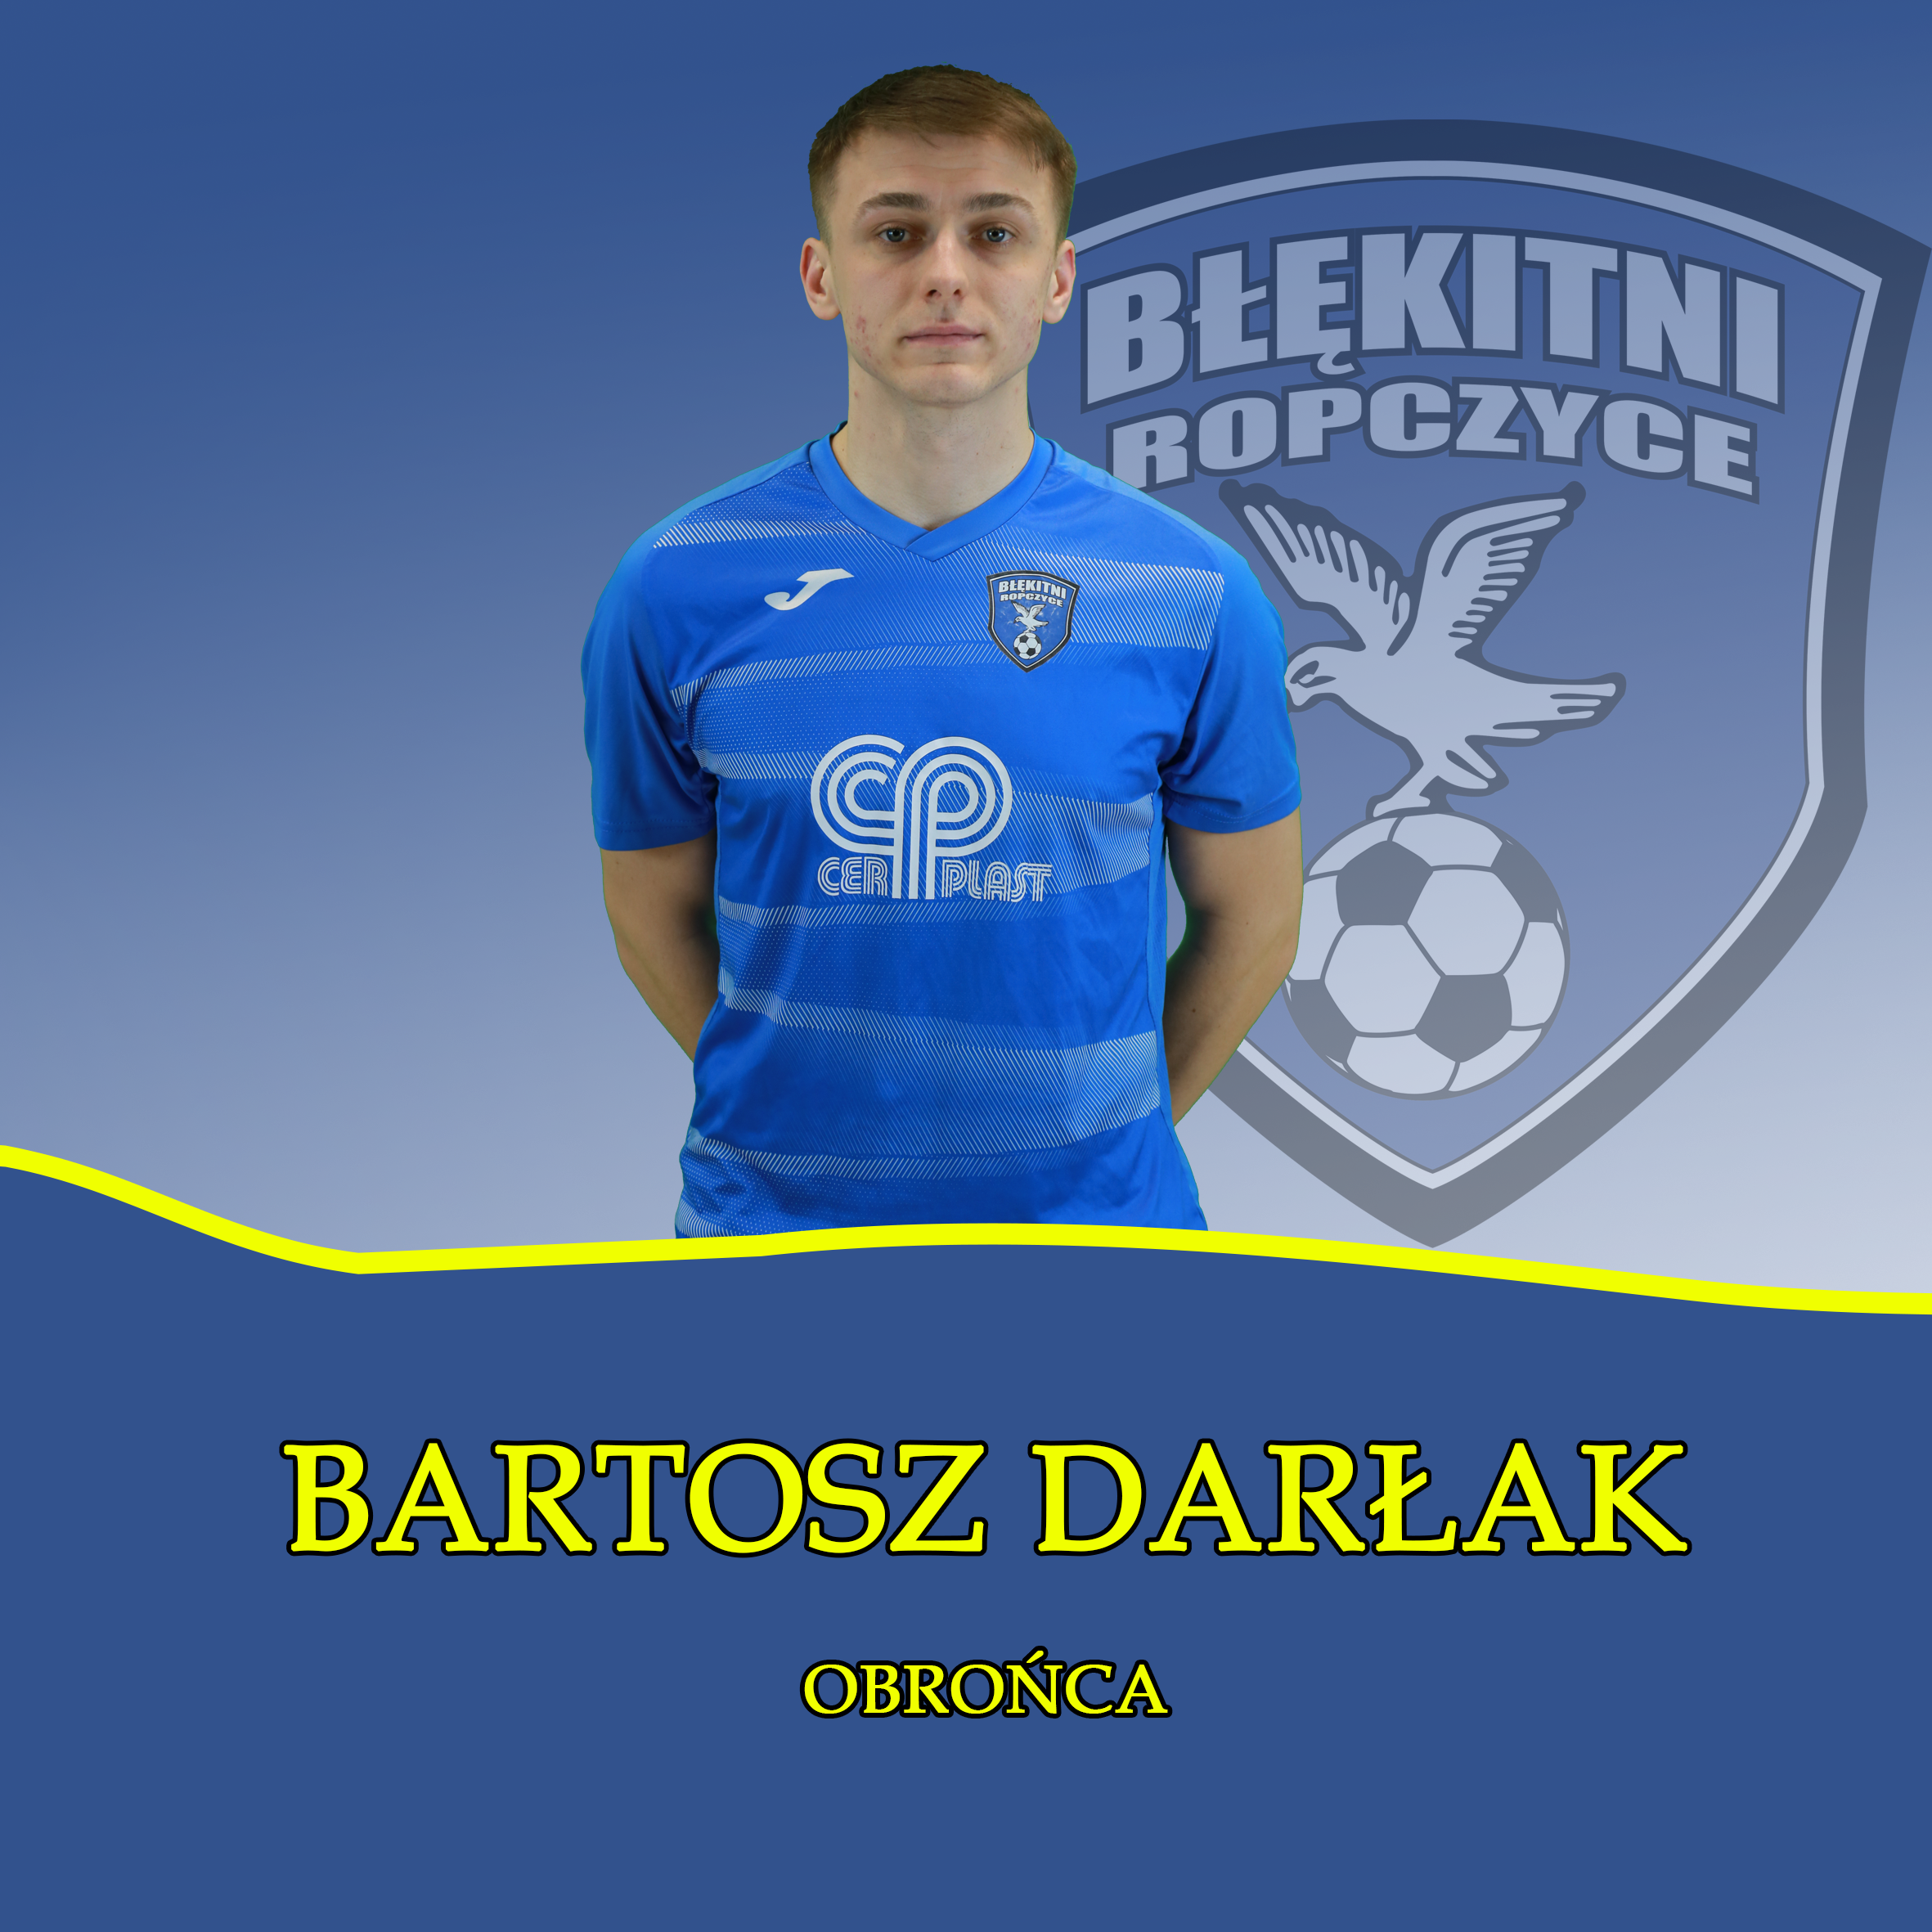 Bartosz Darłak